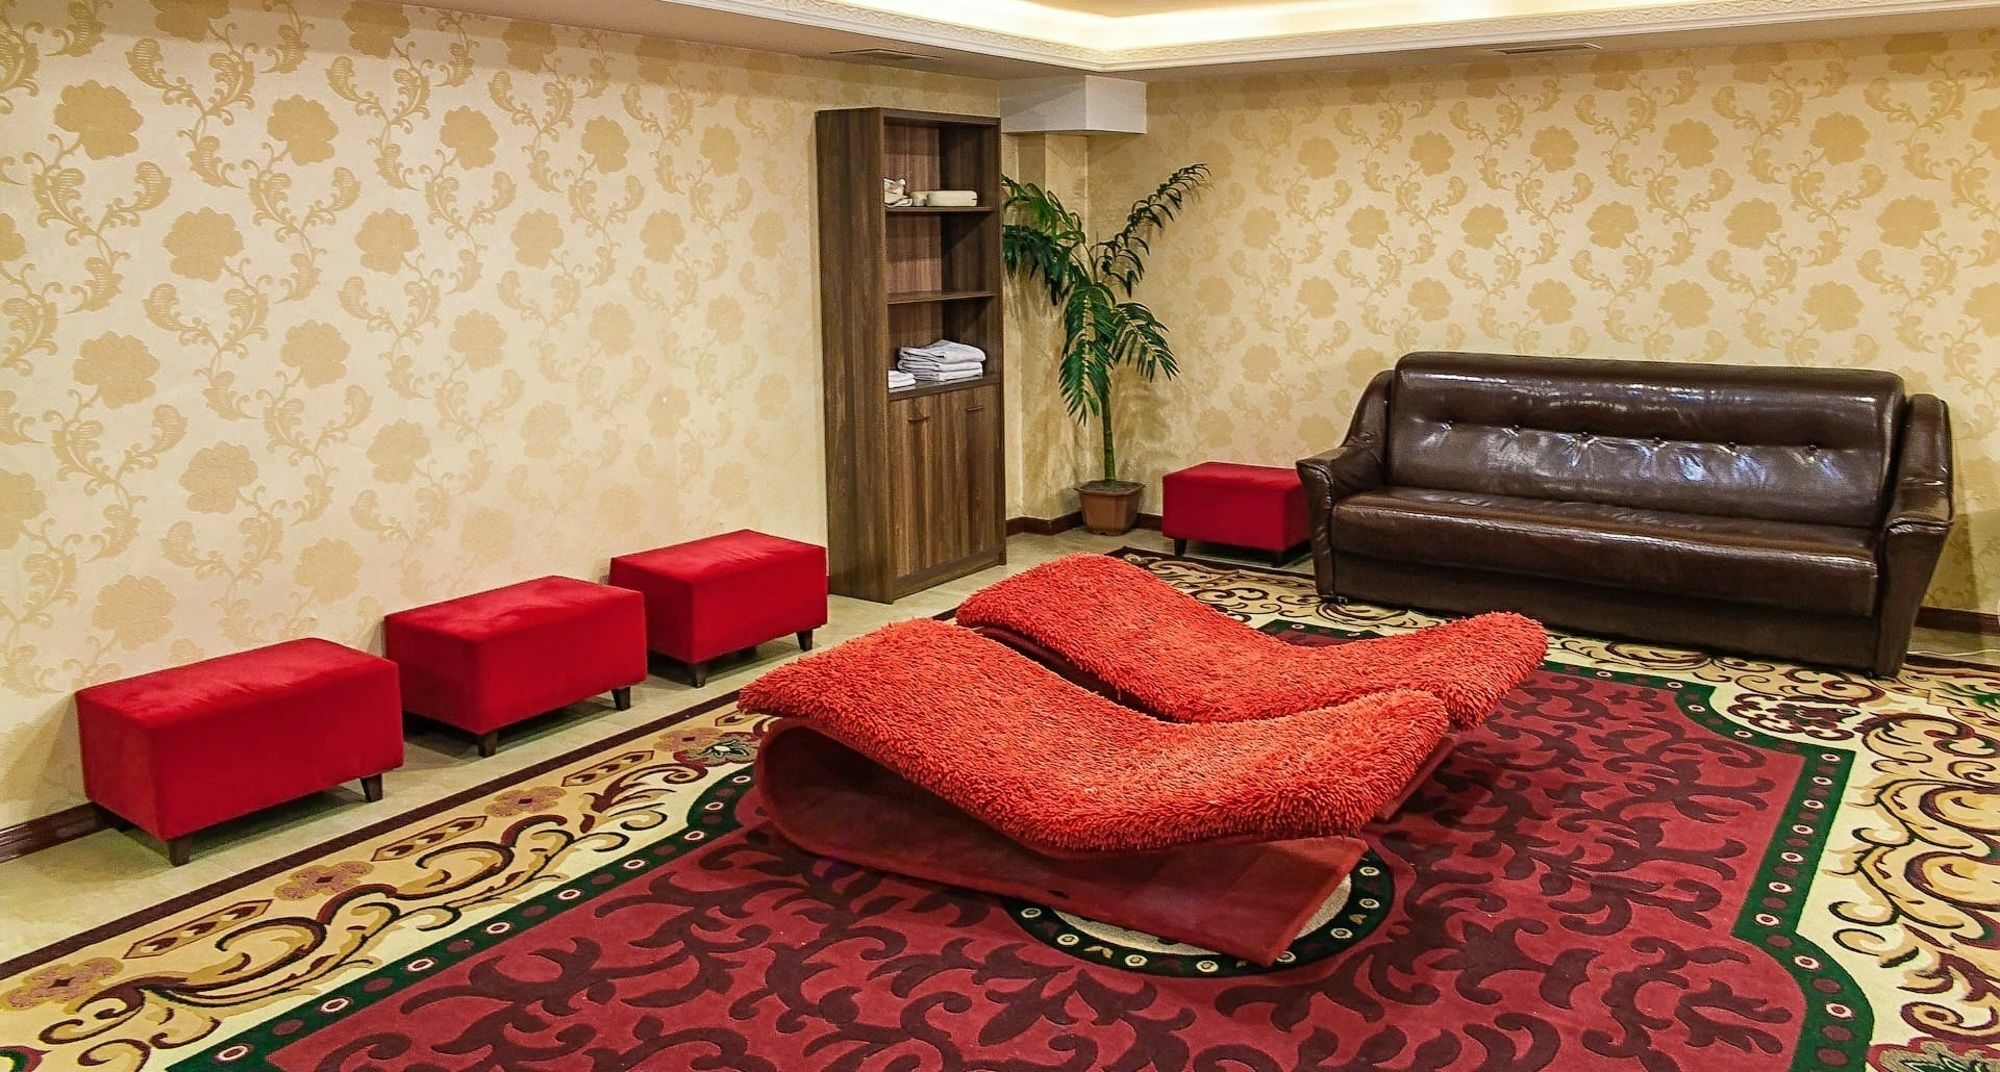 Renion Residence Hotel Almaty Luaran gambar